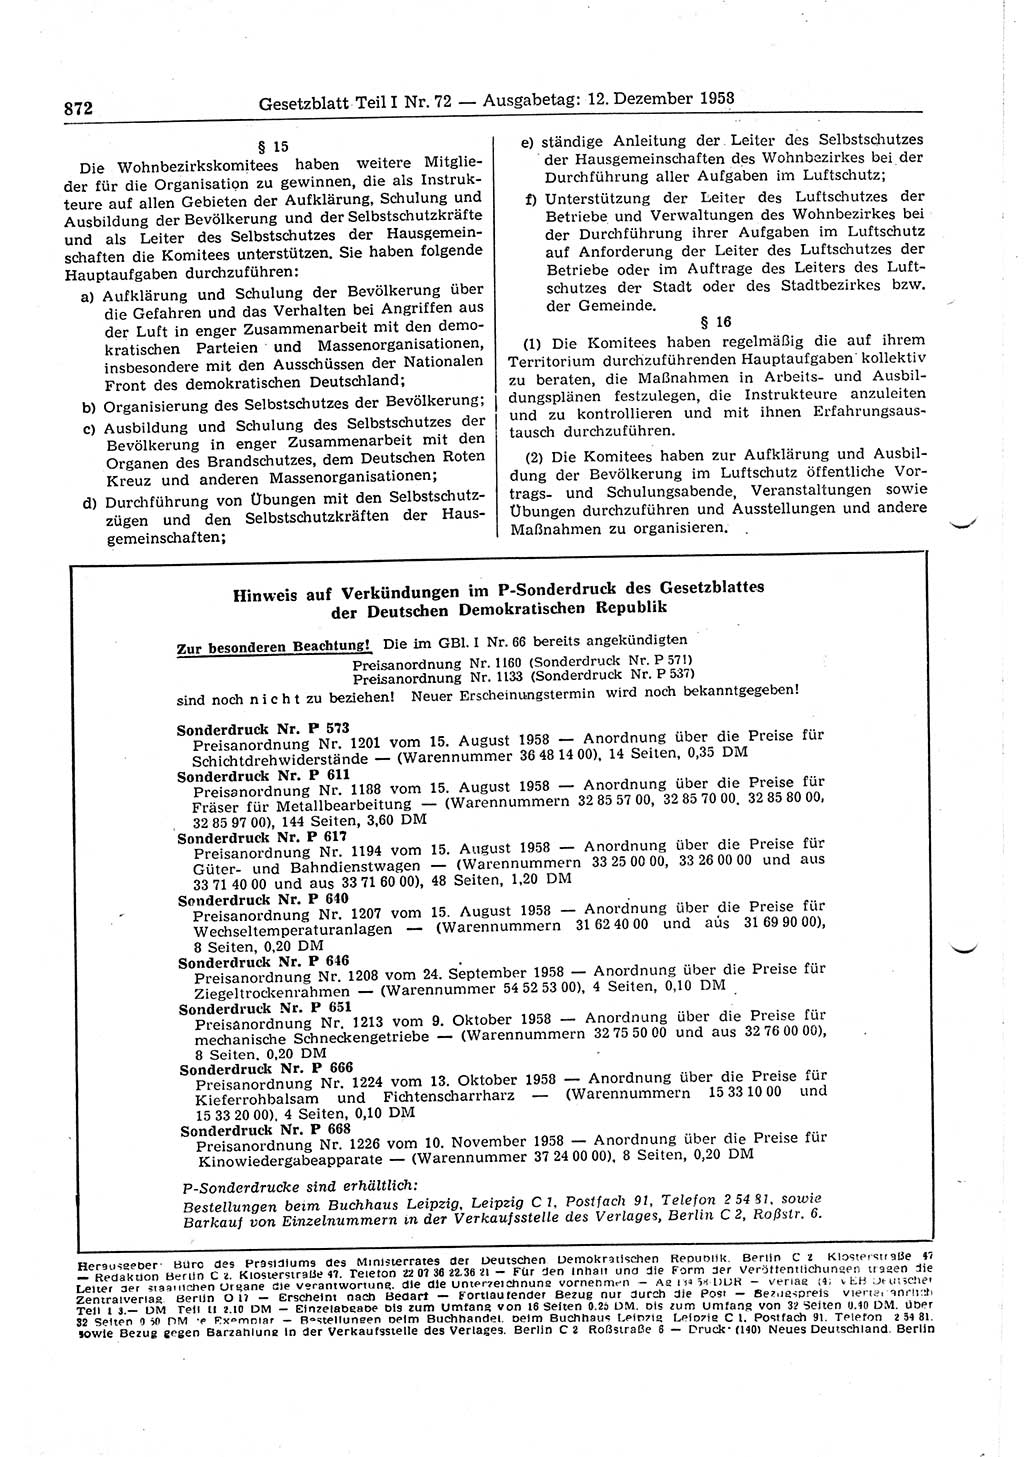 Gesetzblatt (GBl.) der Deutschen Demokratischen Republik (DDR) Teil Ⅰ 1958, Seite 872 (GBl. DDR Ⅰ 1958, S. 872)